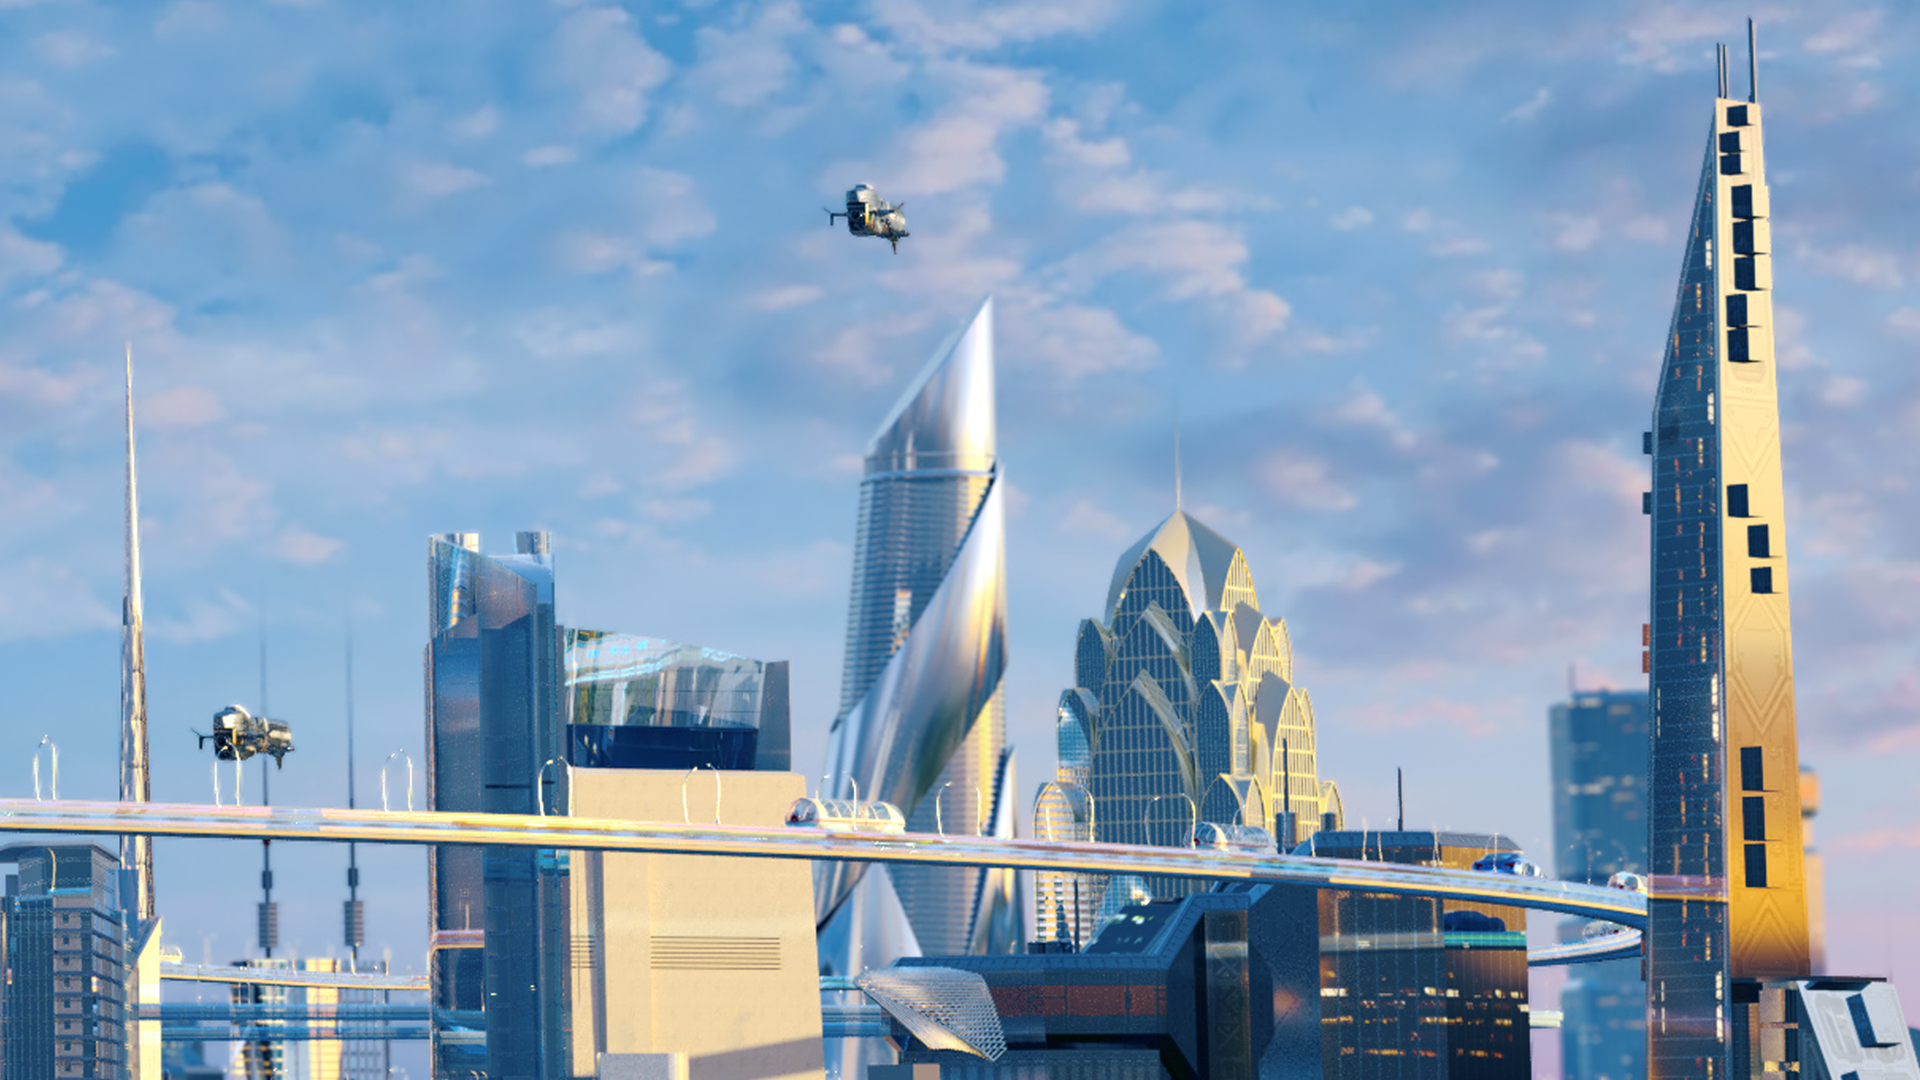 未来科幻城市